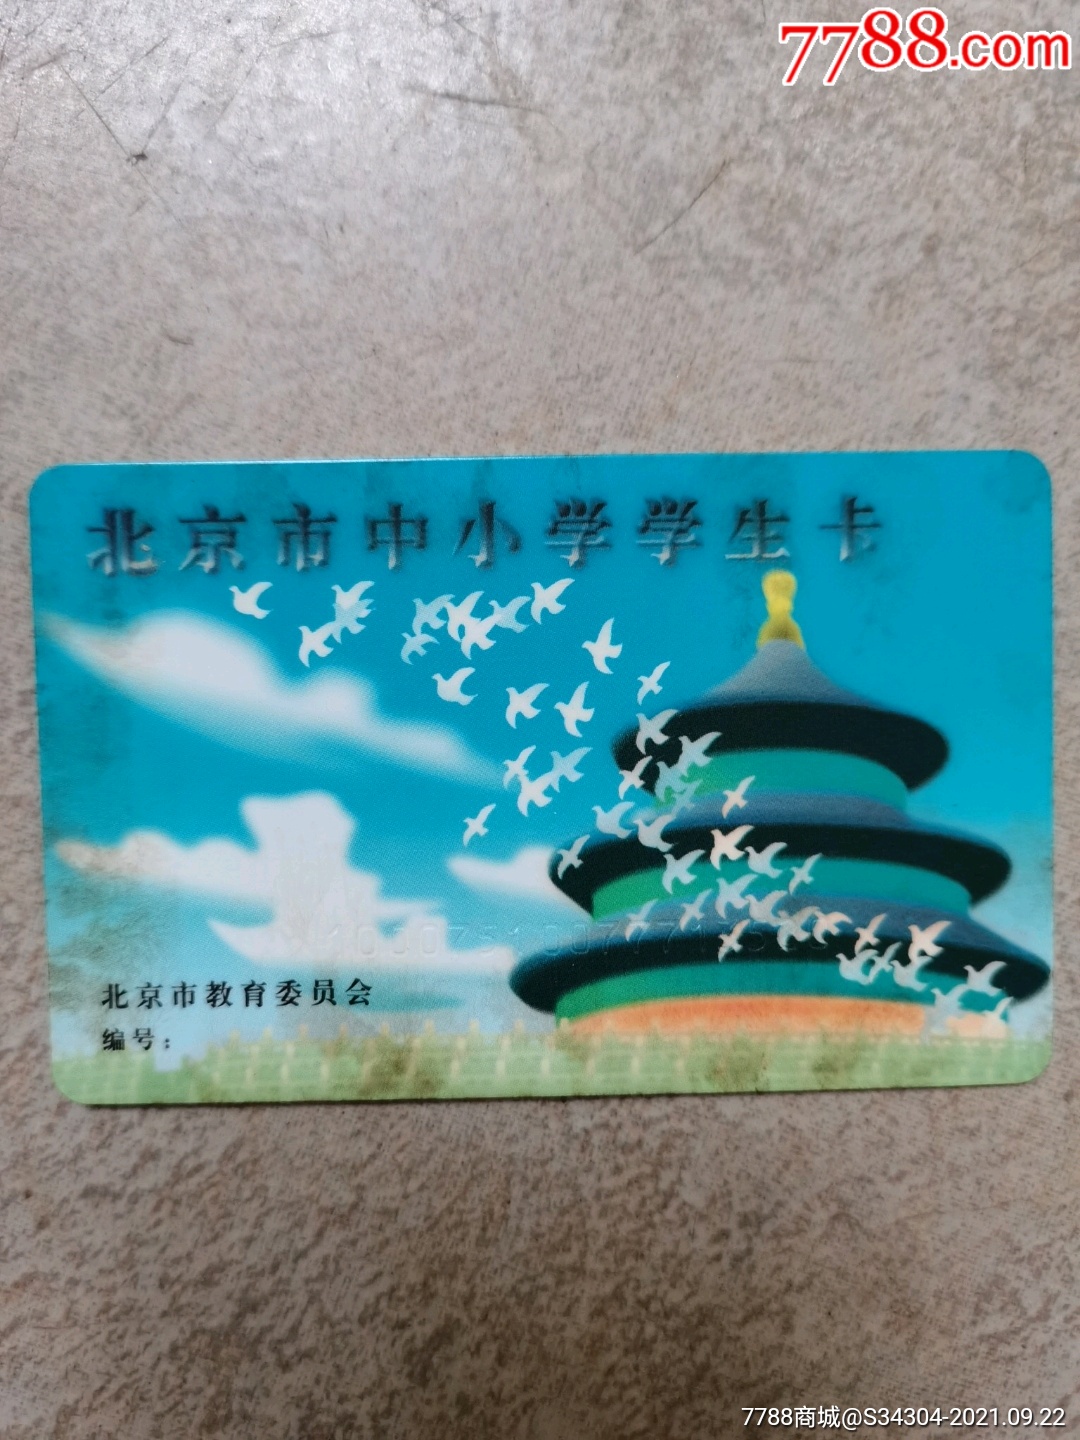 北京市中小学学生卡